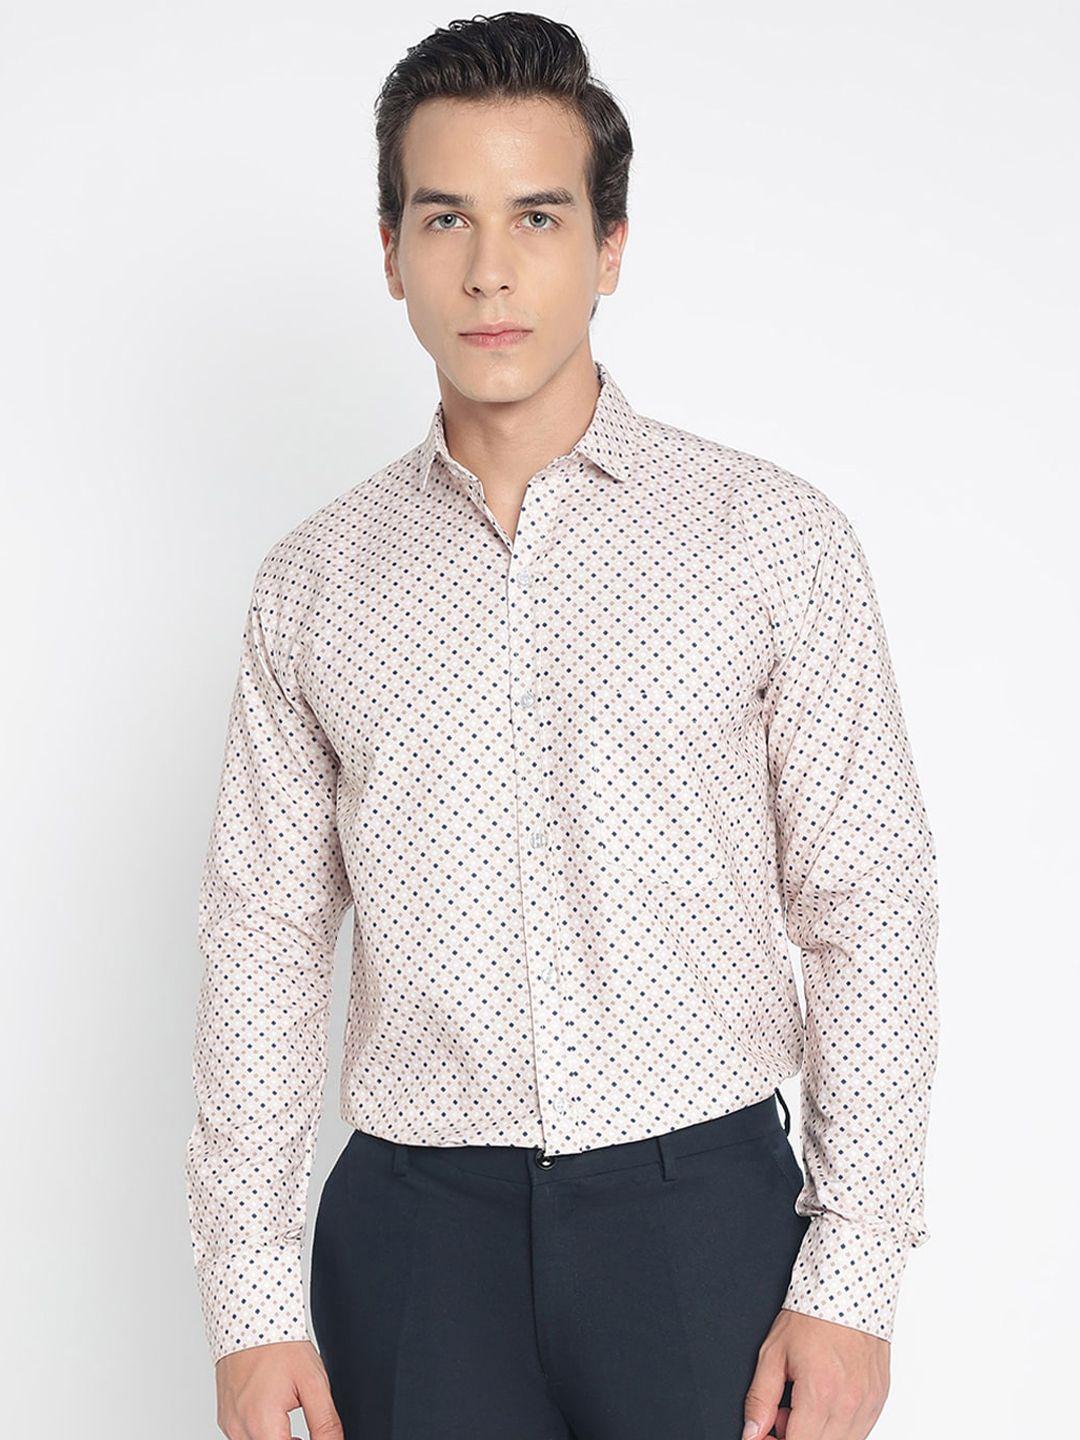 colorwings comfort slim fit printed formal shirt